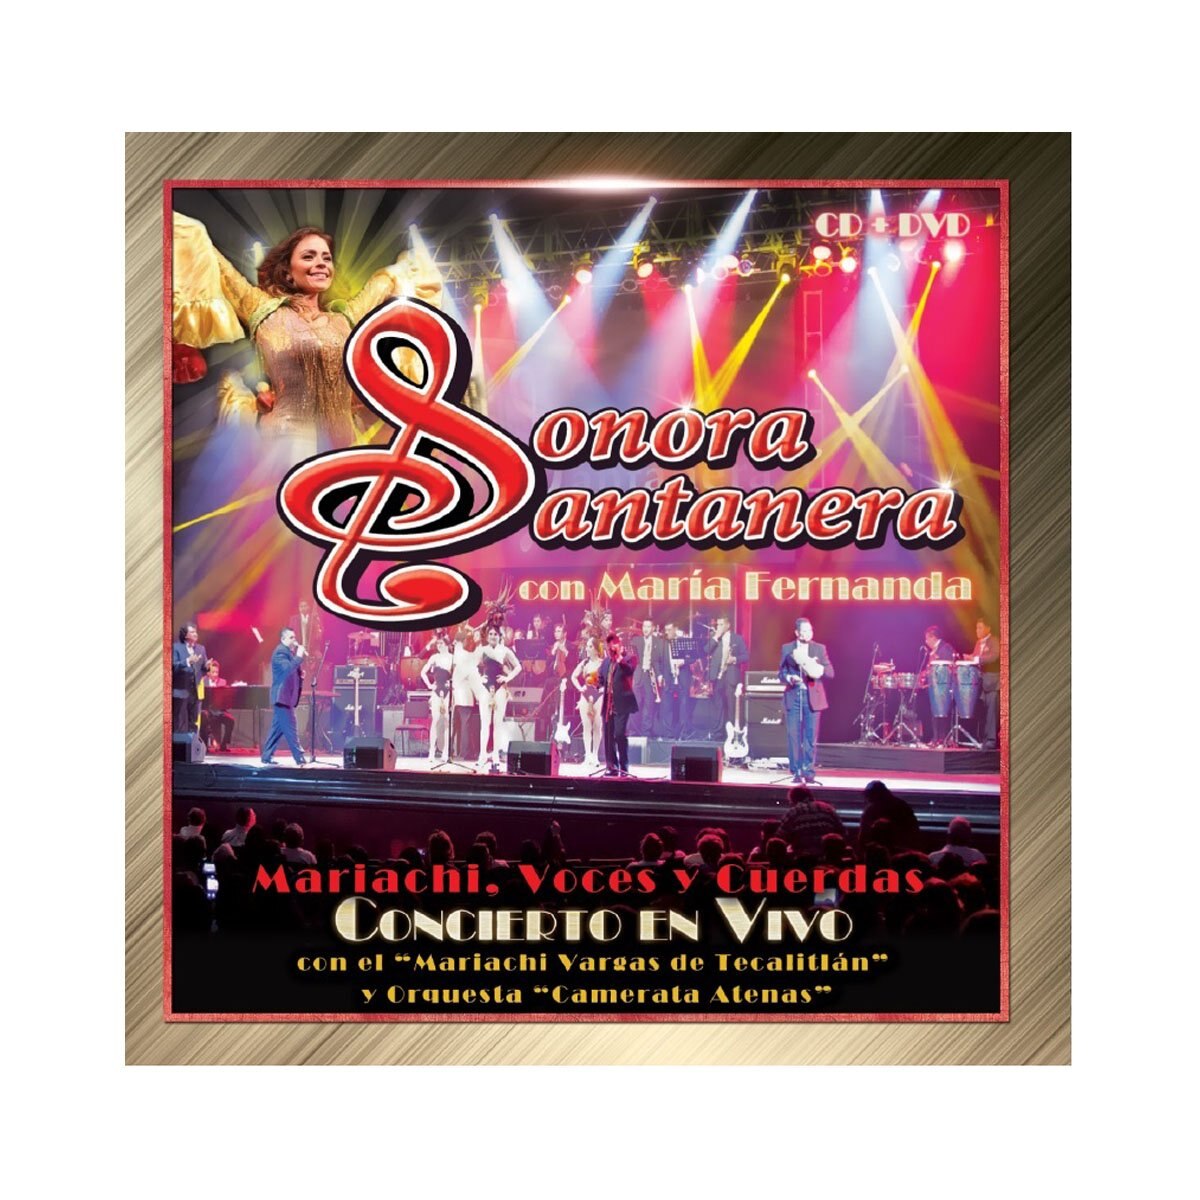 Dvd Sonora Santanera Mariachi Voces Y Cuerdas Concierto en Vivo